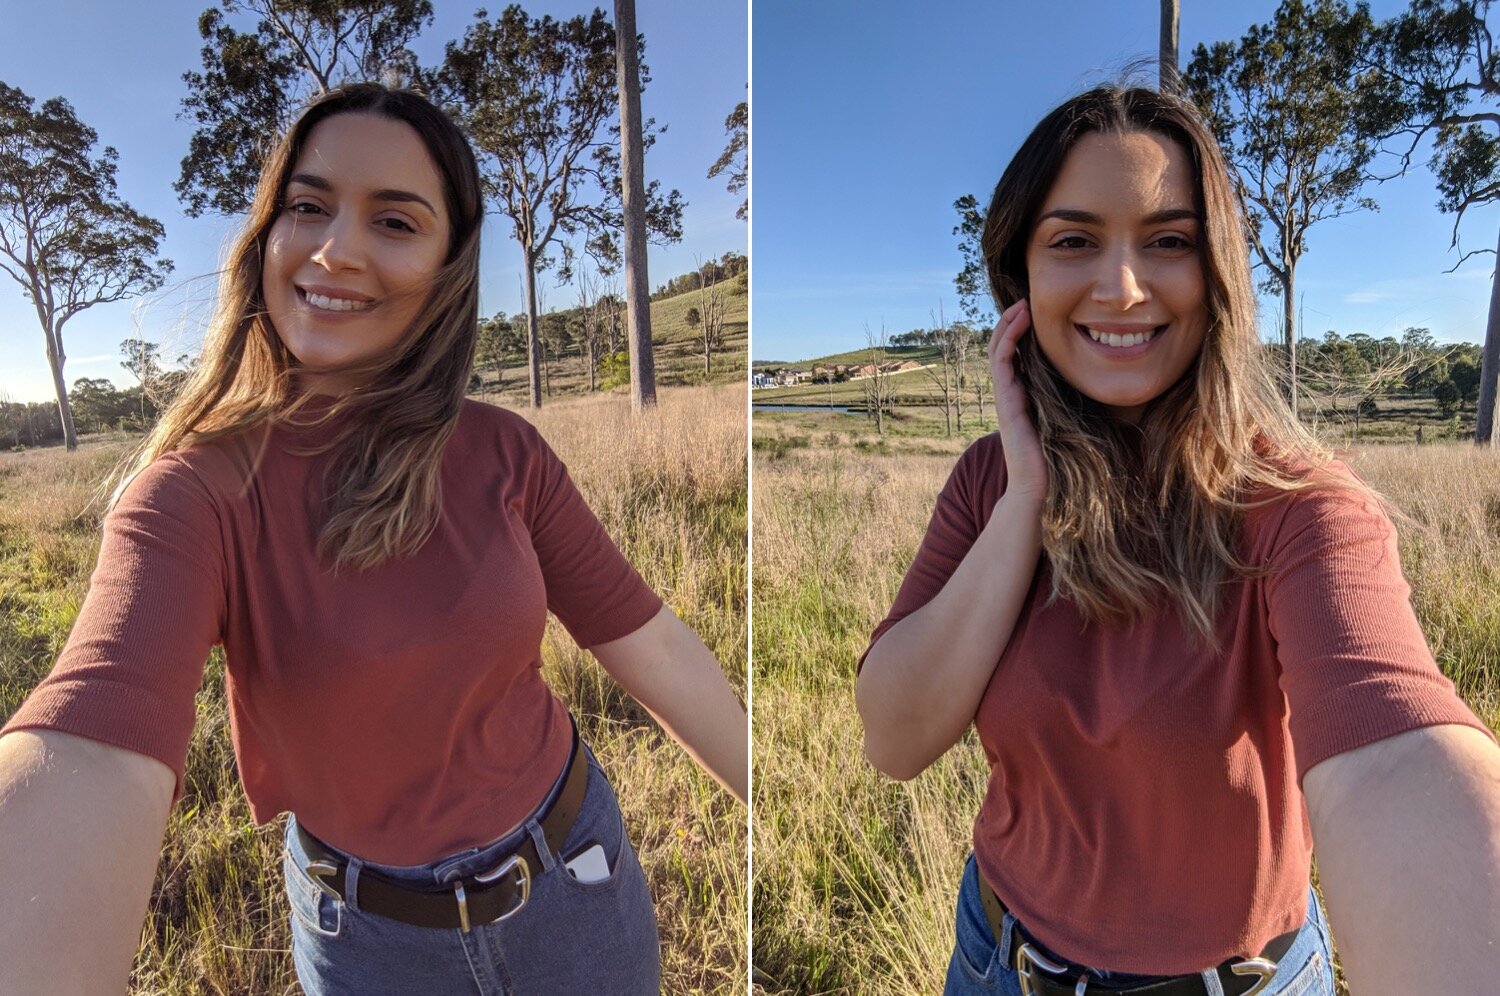  Pixel 3 wide selfie / Pixel 4 wide selfie 